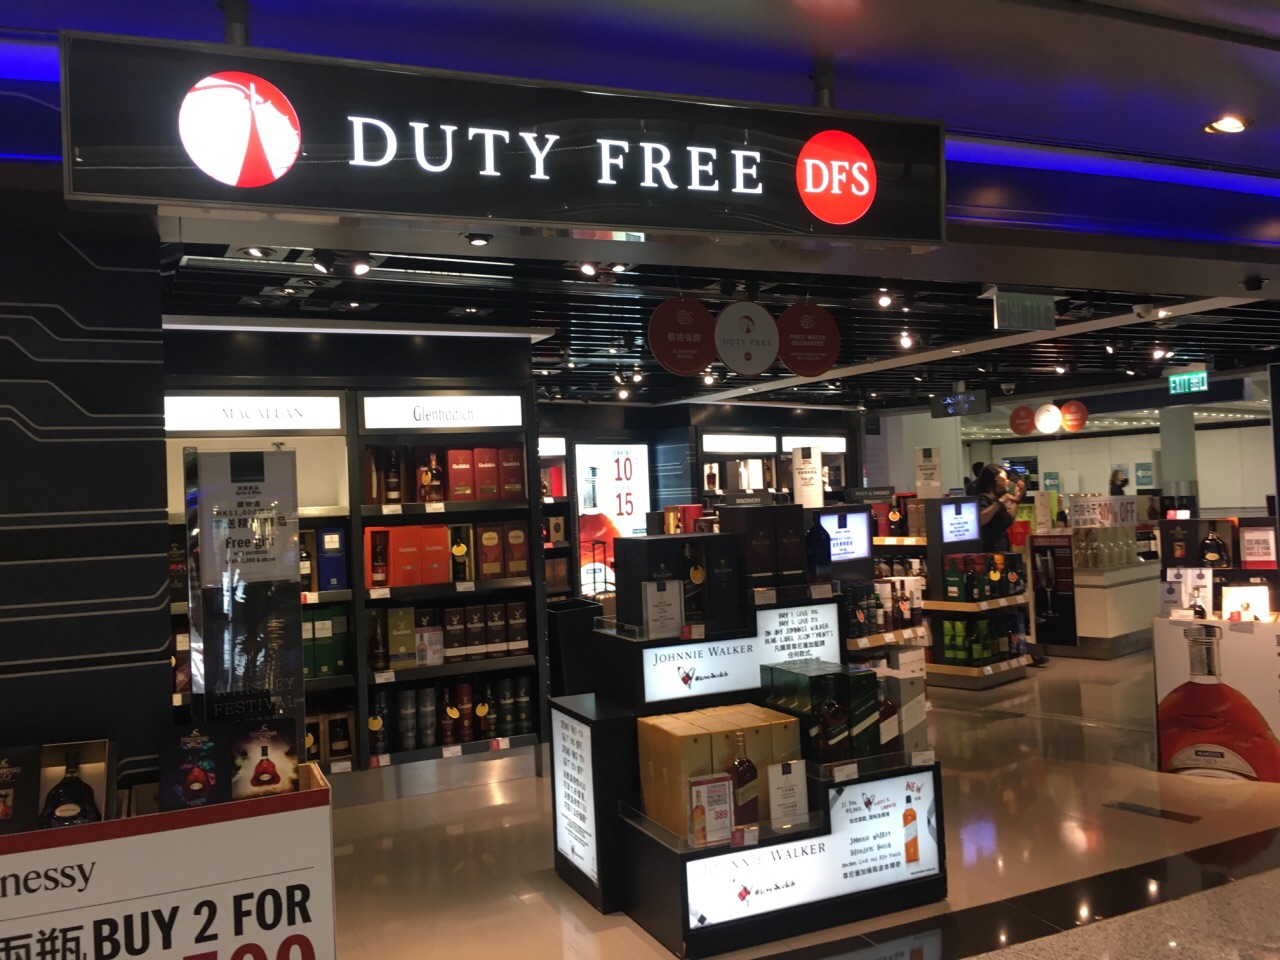 香港机场的dfs免税店,不但在出境大厅有,抵达大厅也有